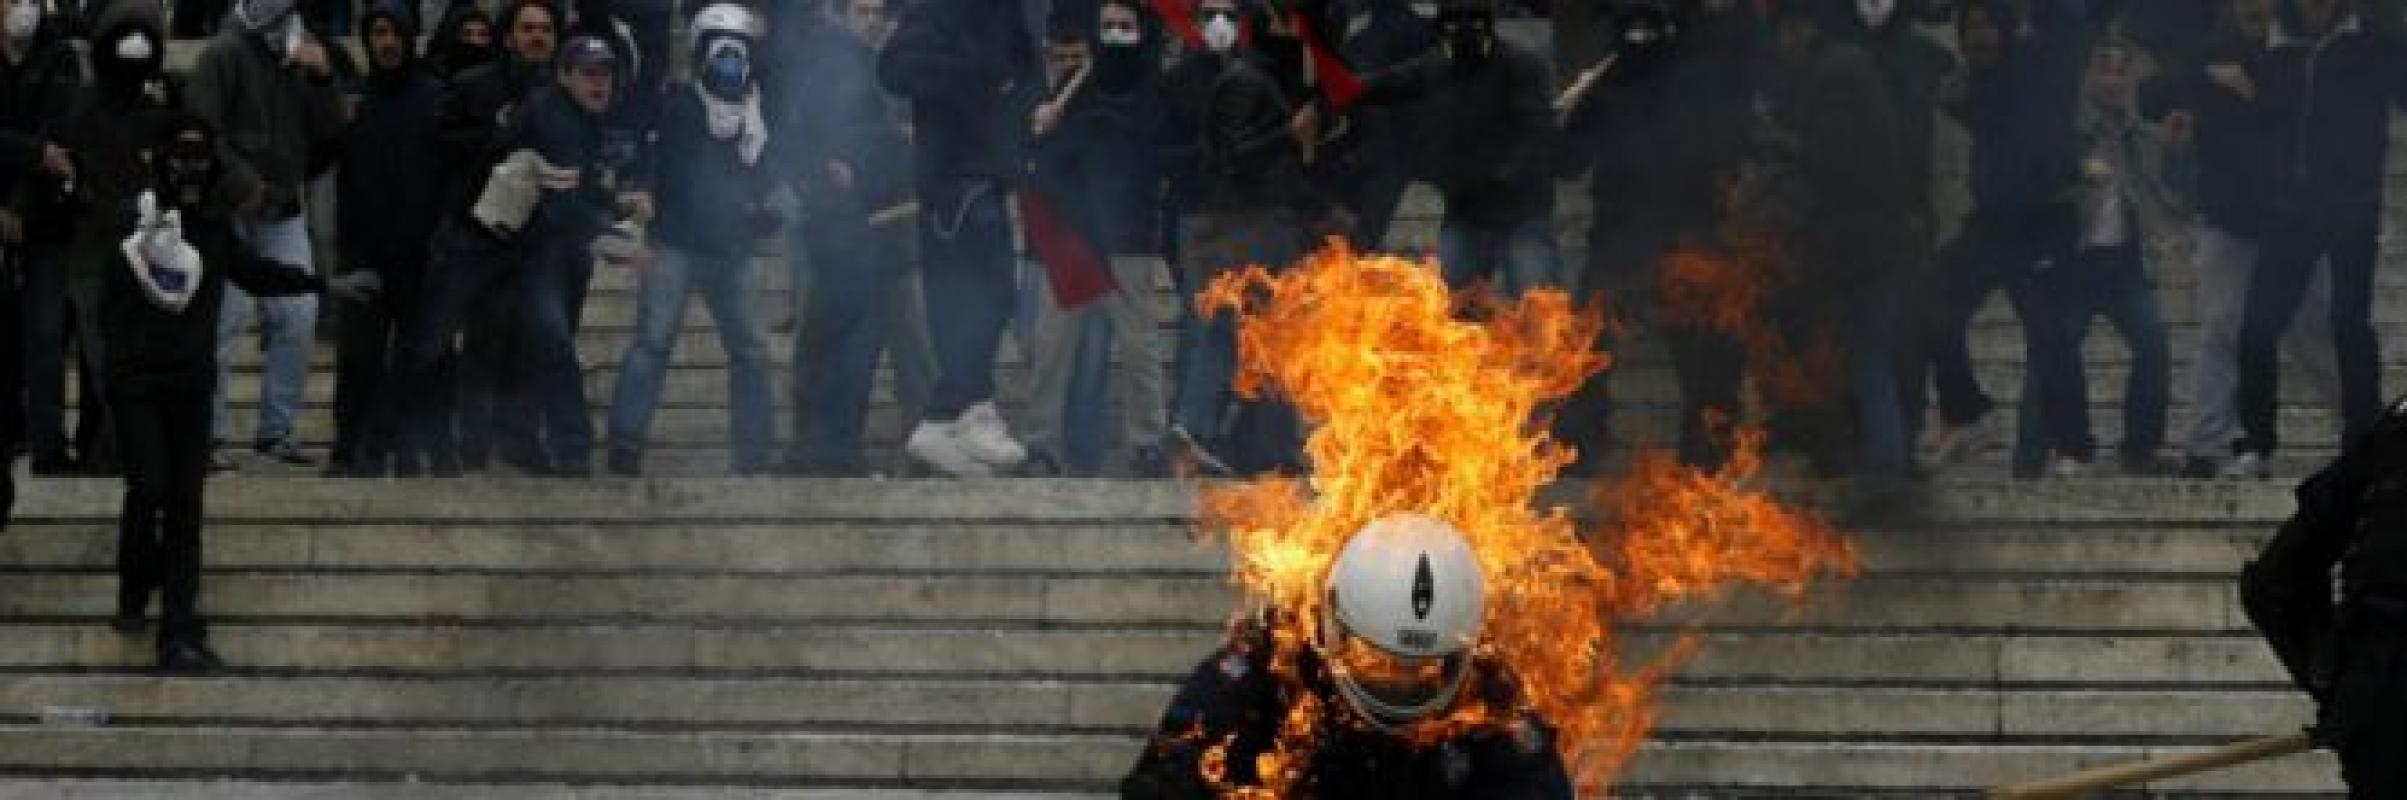 Makedonijos chaosas. Spalvotų revoliucijų šešėlis pakibo virš Balkanų